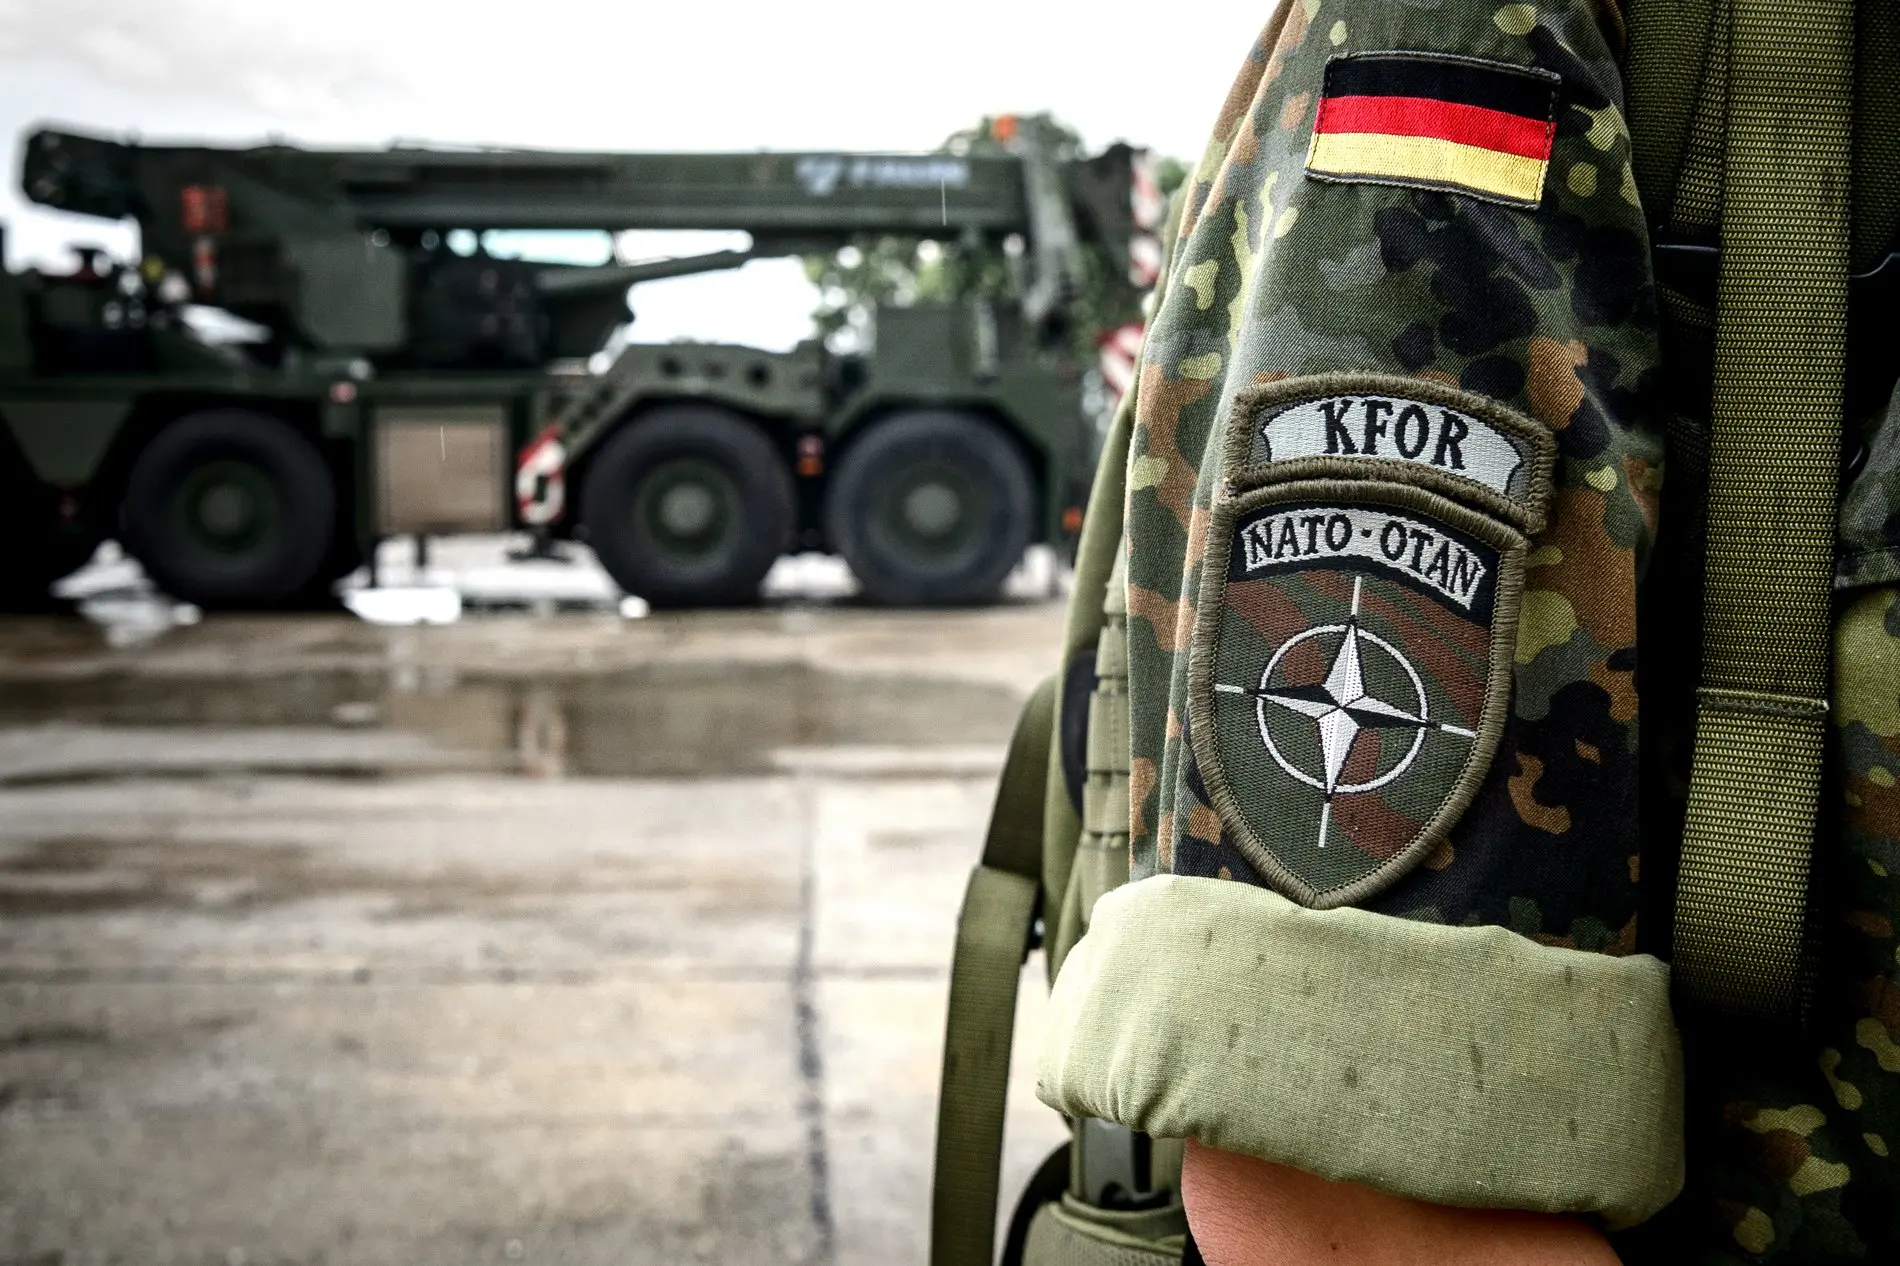 "Nato-Otan" steht auf dem Ärmelabzeichen einer Bundeswehrsoldatin der deutschen Kfor.